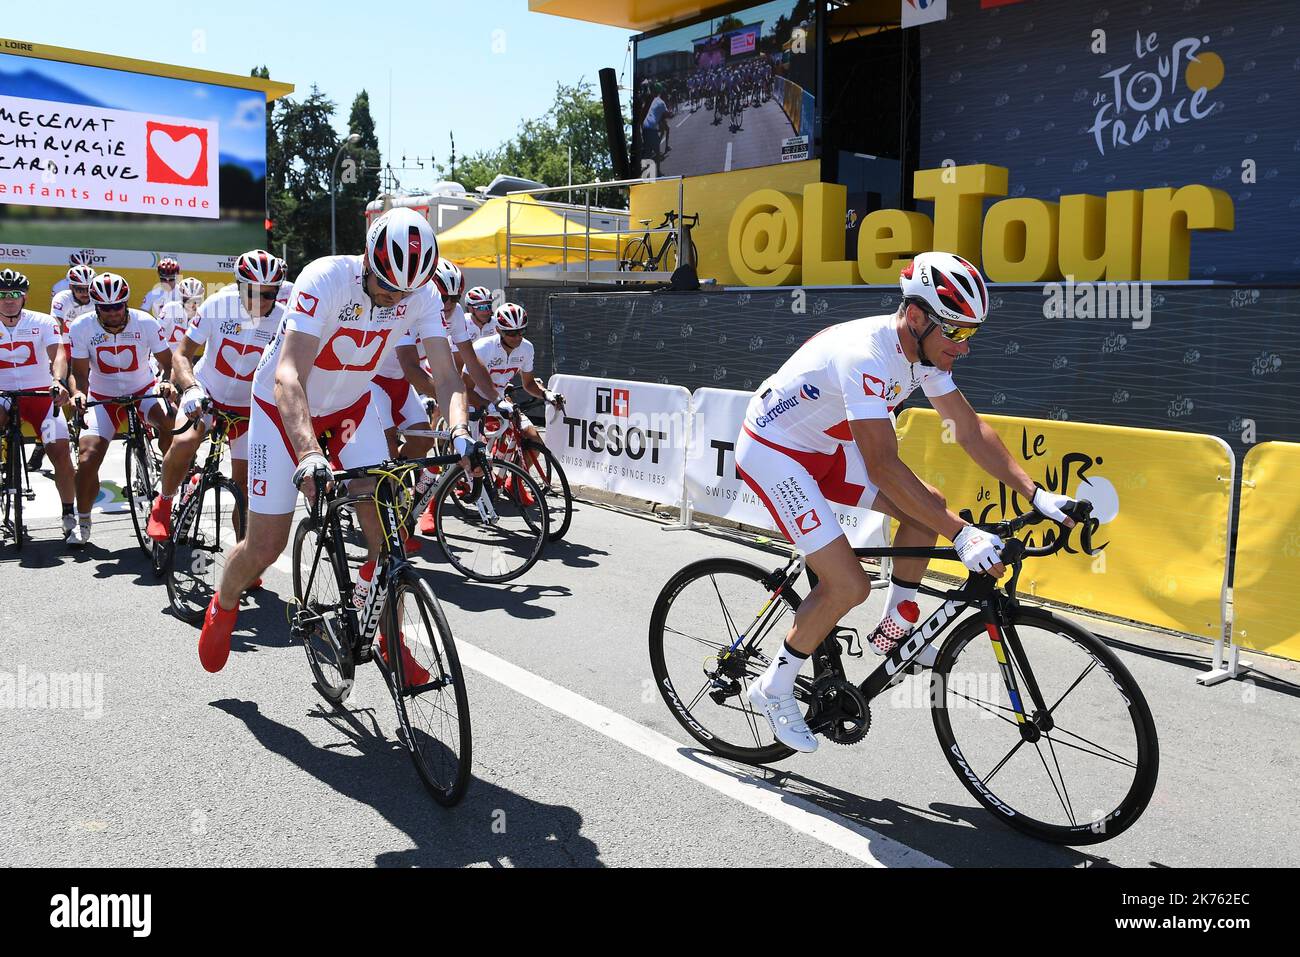 MECENAT CHIRURGIE CARDIAQUE - Tour de France 2018 - gara ciclistica si svolge dal 7th al 29th 2018 luglio. 21 fasi - 3 351kms - Foto Stock